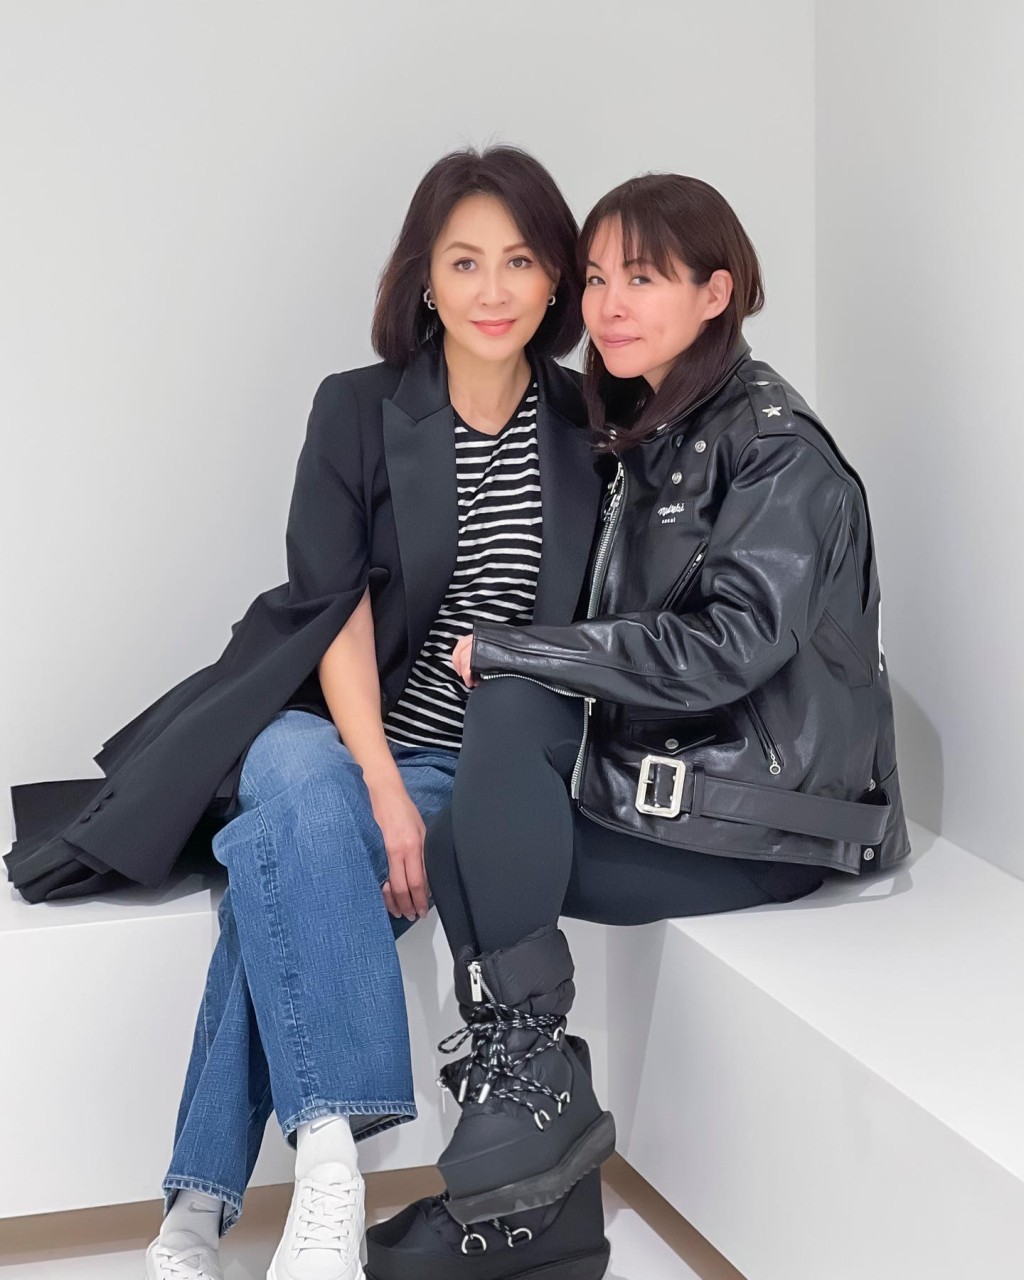 梁朝伟与刘嘉玲在日本见名设计师阿部千登势。